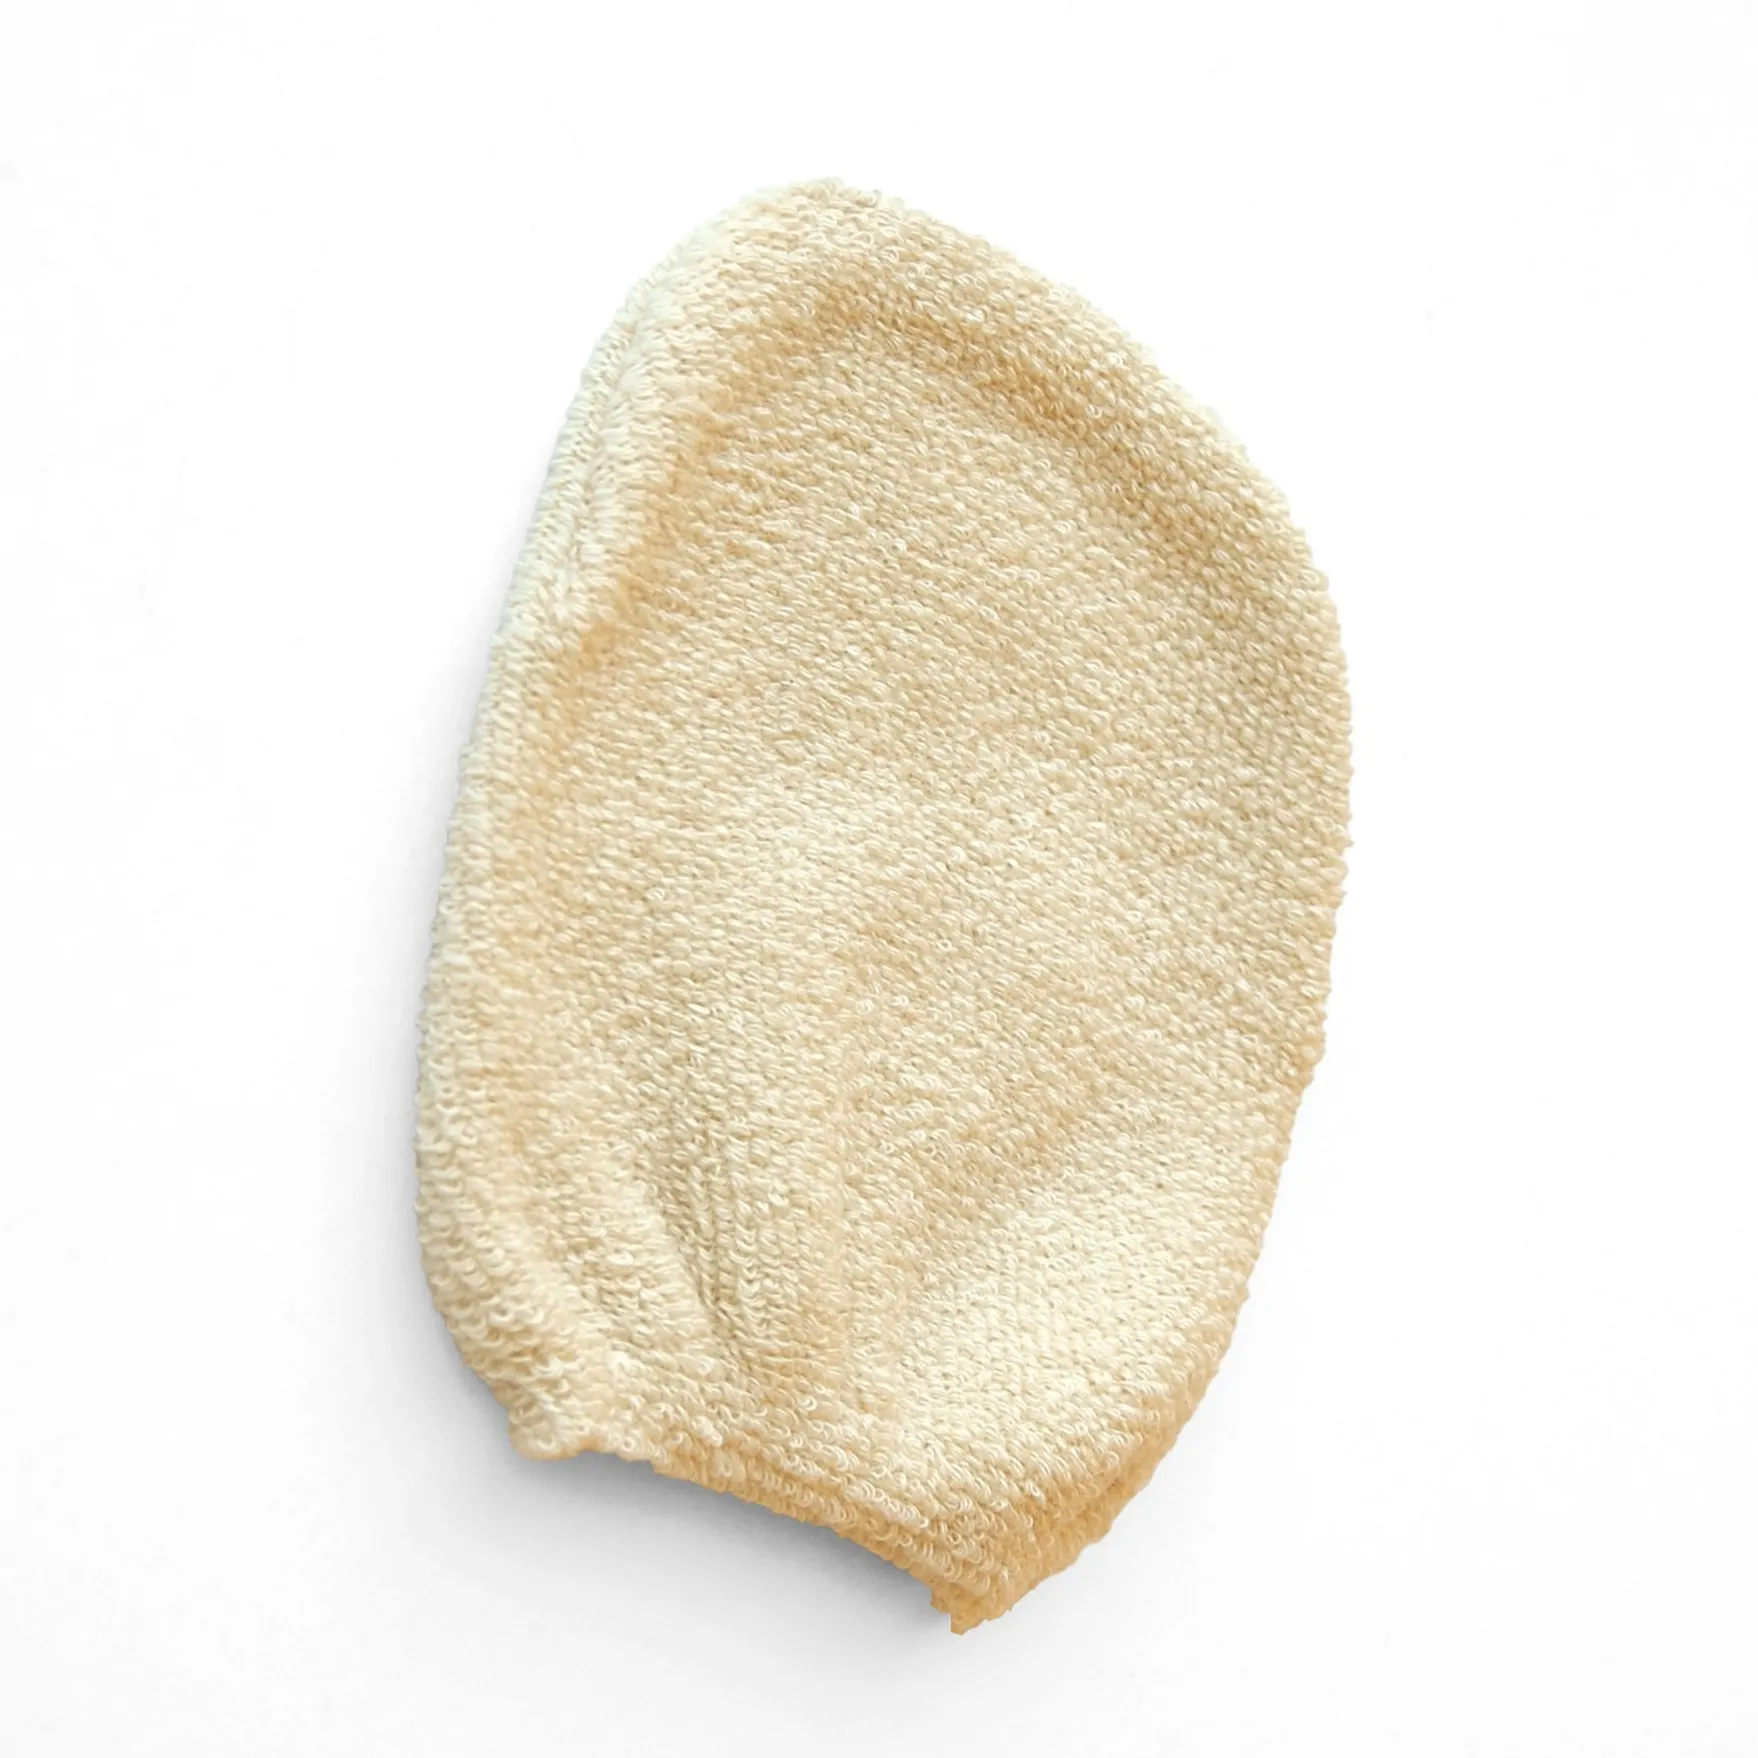 Desmaquillador de algodón Natural BIO Fórmula exfoliante orgánica suave y suave Reutilizable y lavable Hipoalergénico para la cara